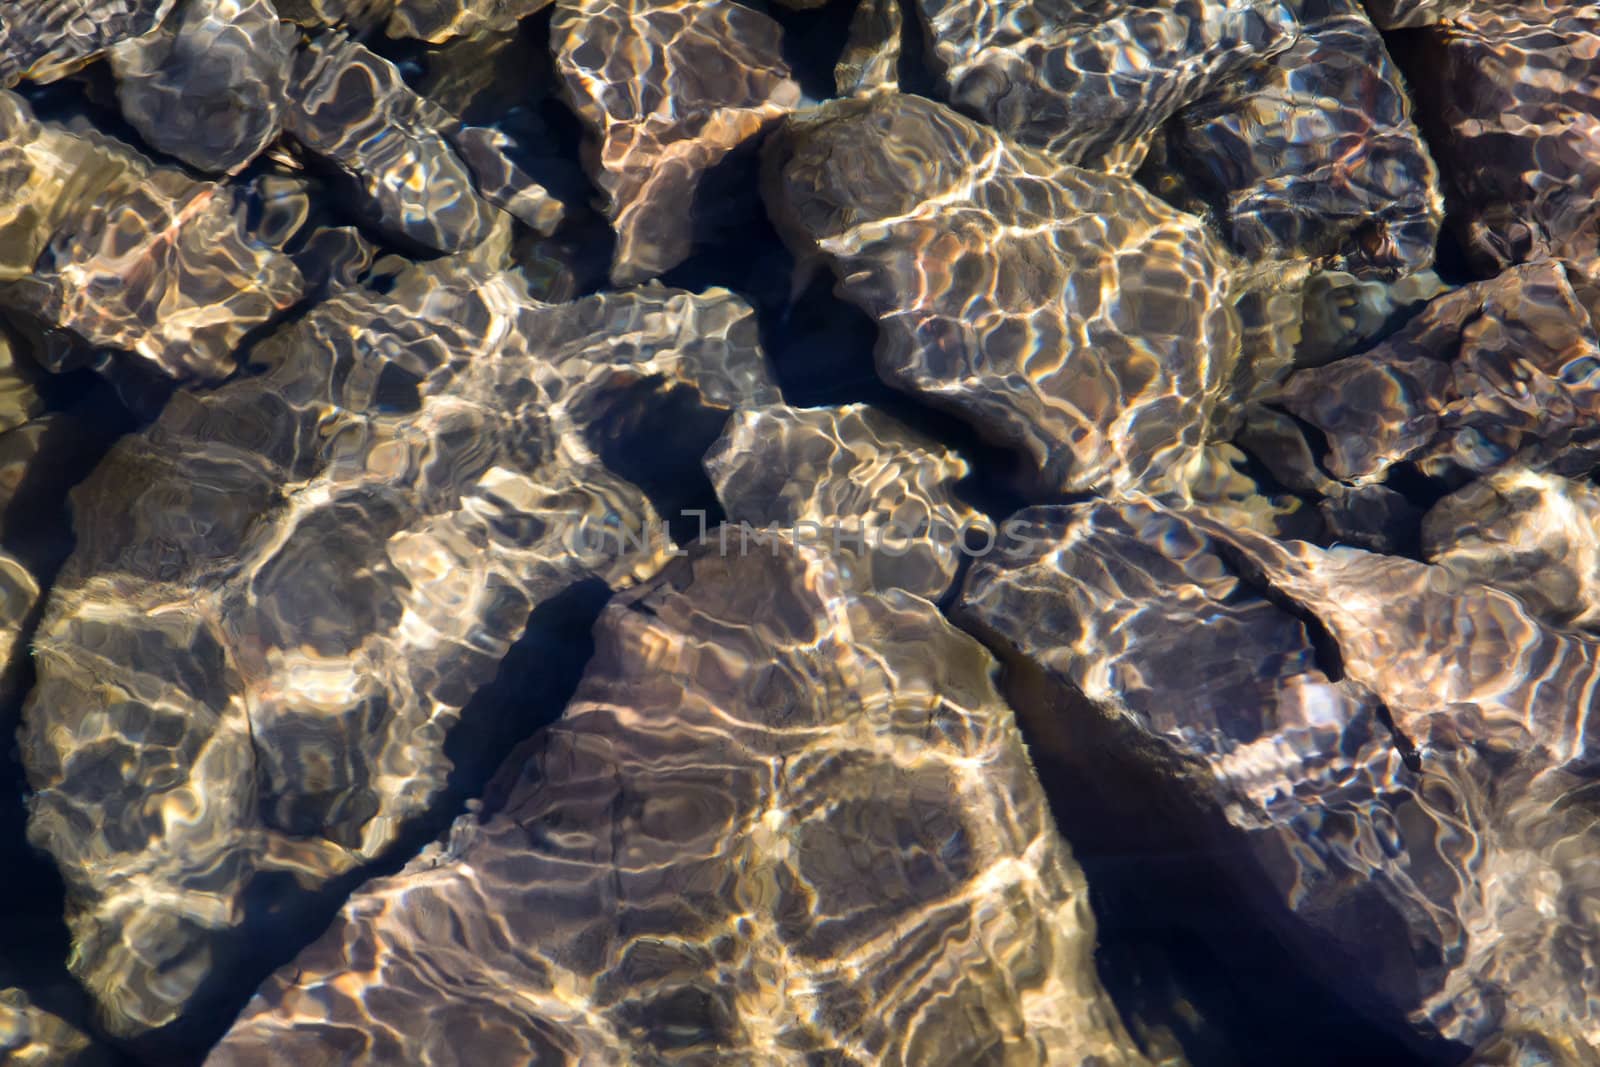 Rocks in Clear Water by wolterk